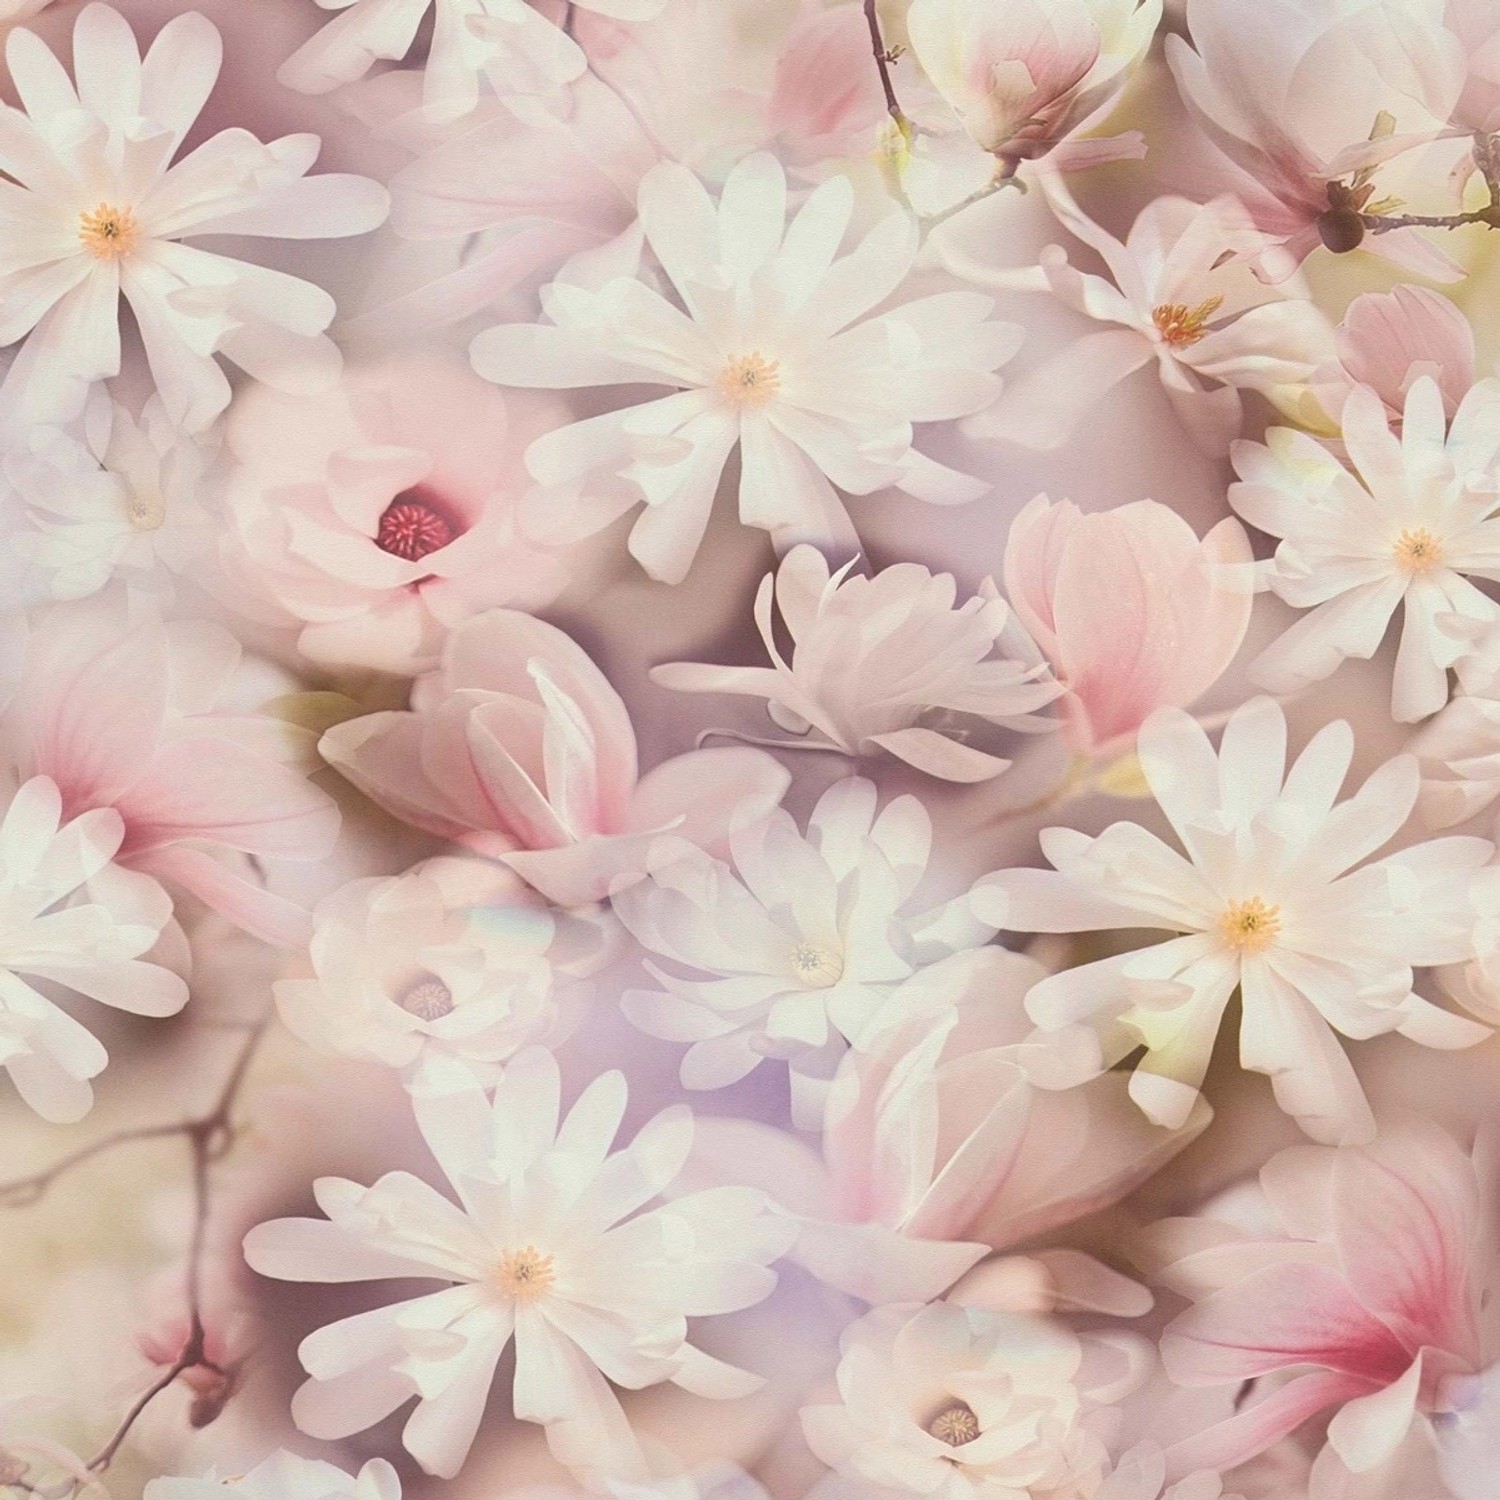 Bricoflor Tapete Dunkelgrün Floral Vlies Blumentapete Gemalt Ideal für Wohn günstig online kaufen